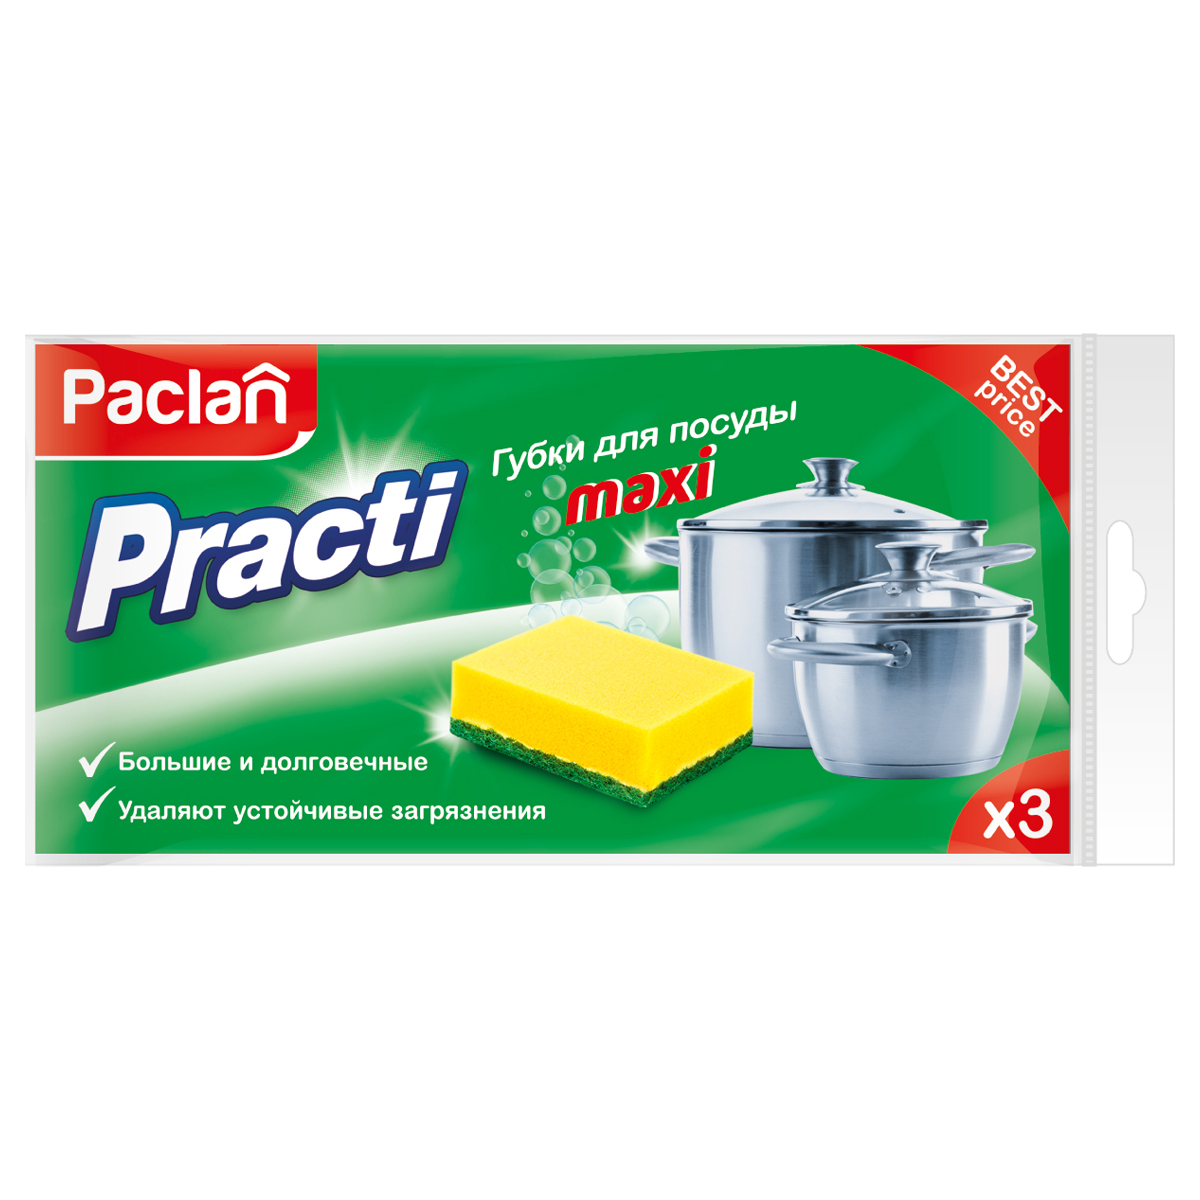 Губки для посуды Paclan "Practi Maxi", поролон с абразивным слоем, 9,5*6,5*3,5см, 3шт.